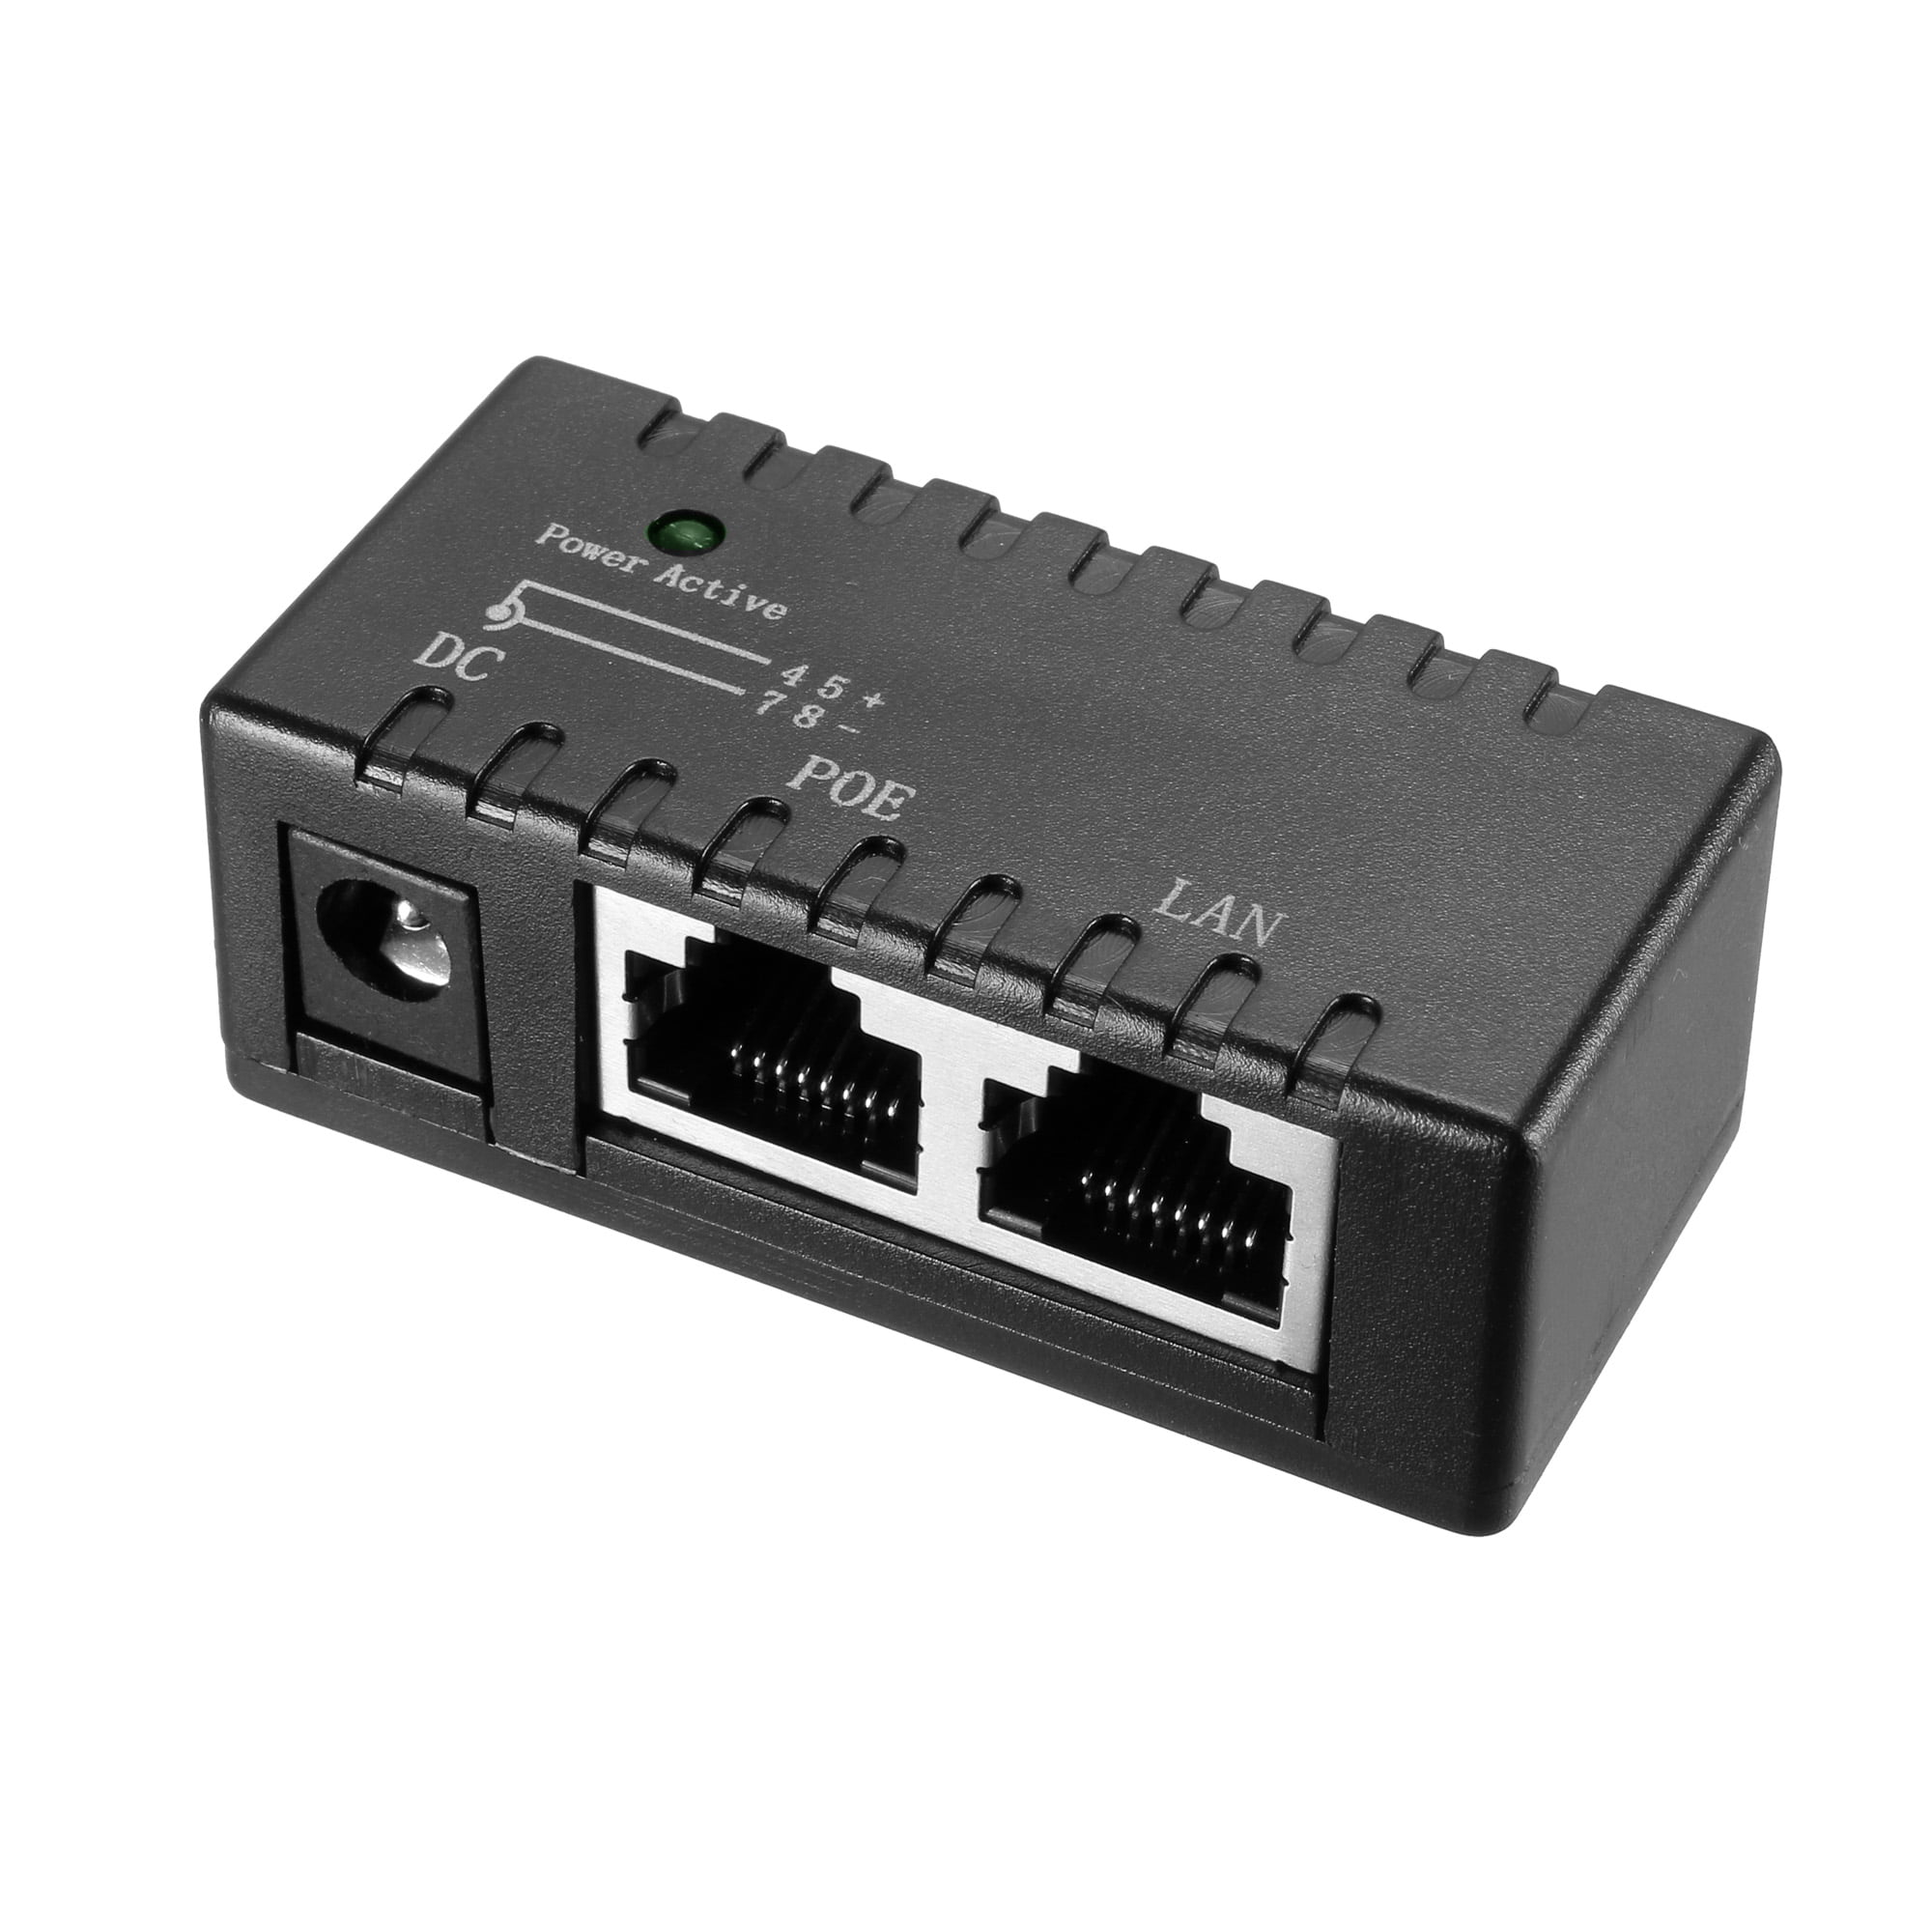 4 PoE US SH 6-Port Power over Ethernet Desktop Switch 10/100 Mbps IEEE802.3AF